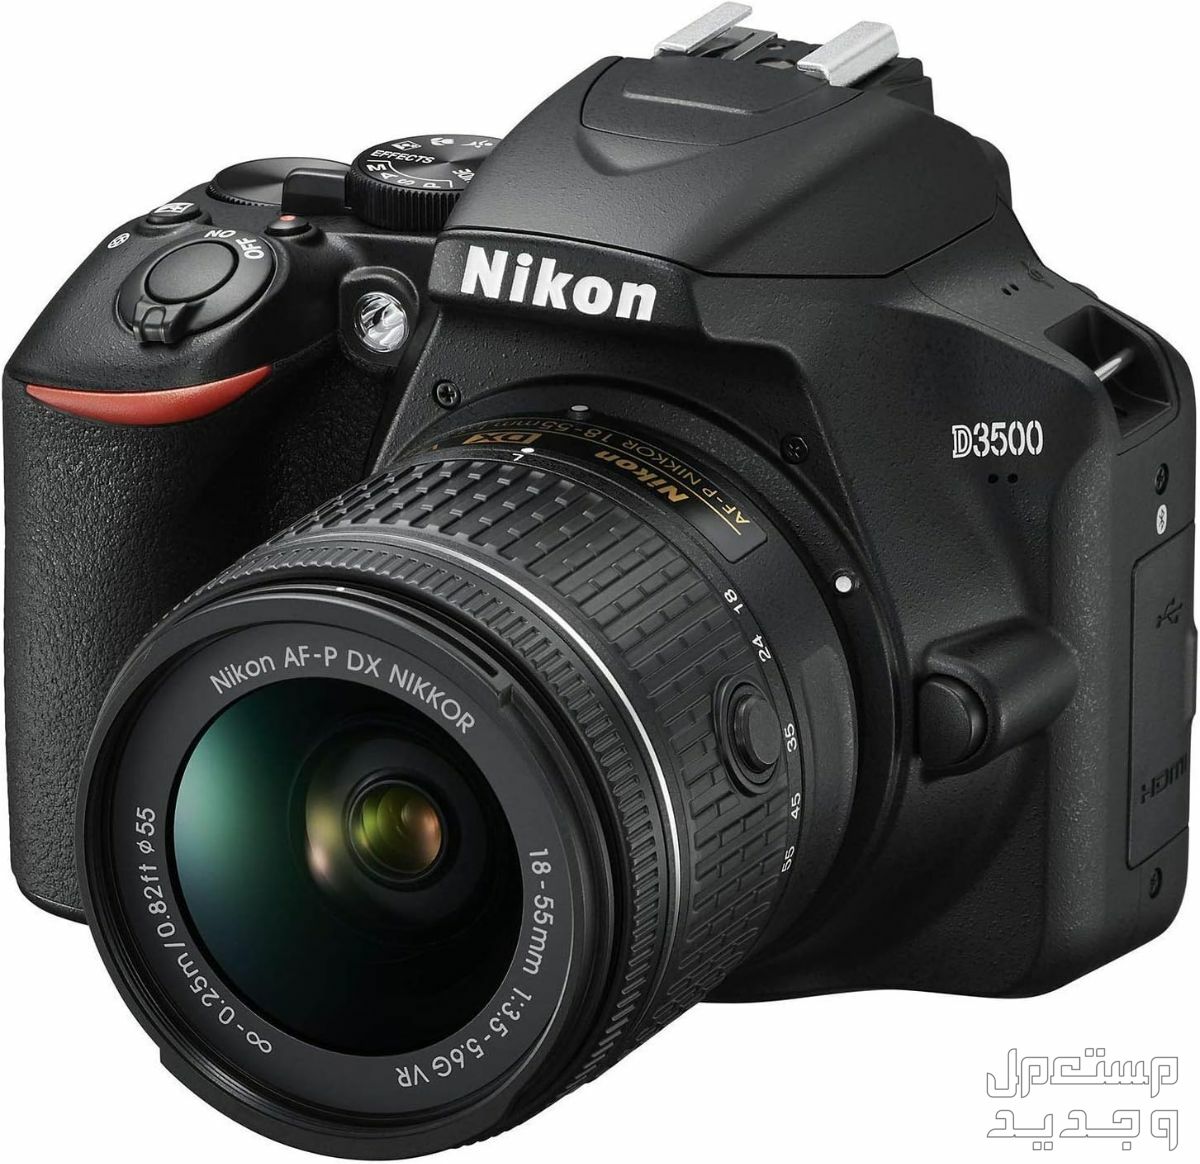 10 كاميرات تصوير ماركات عالمية بأسعار رخيصة في الجزائر مميزات كاميرا Nikon D3500